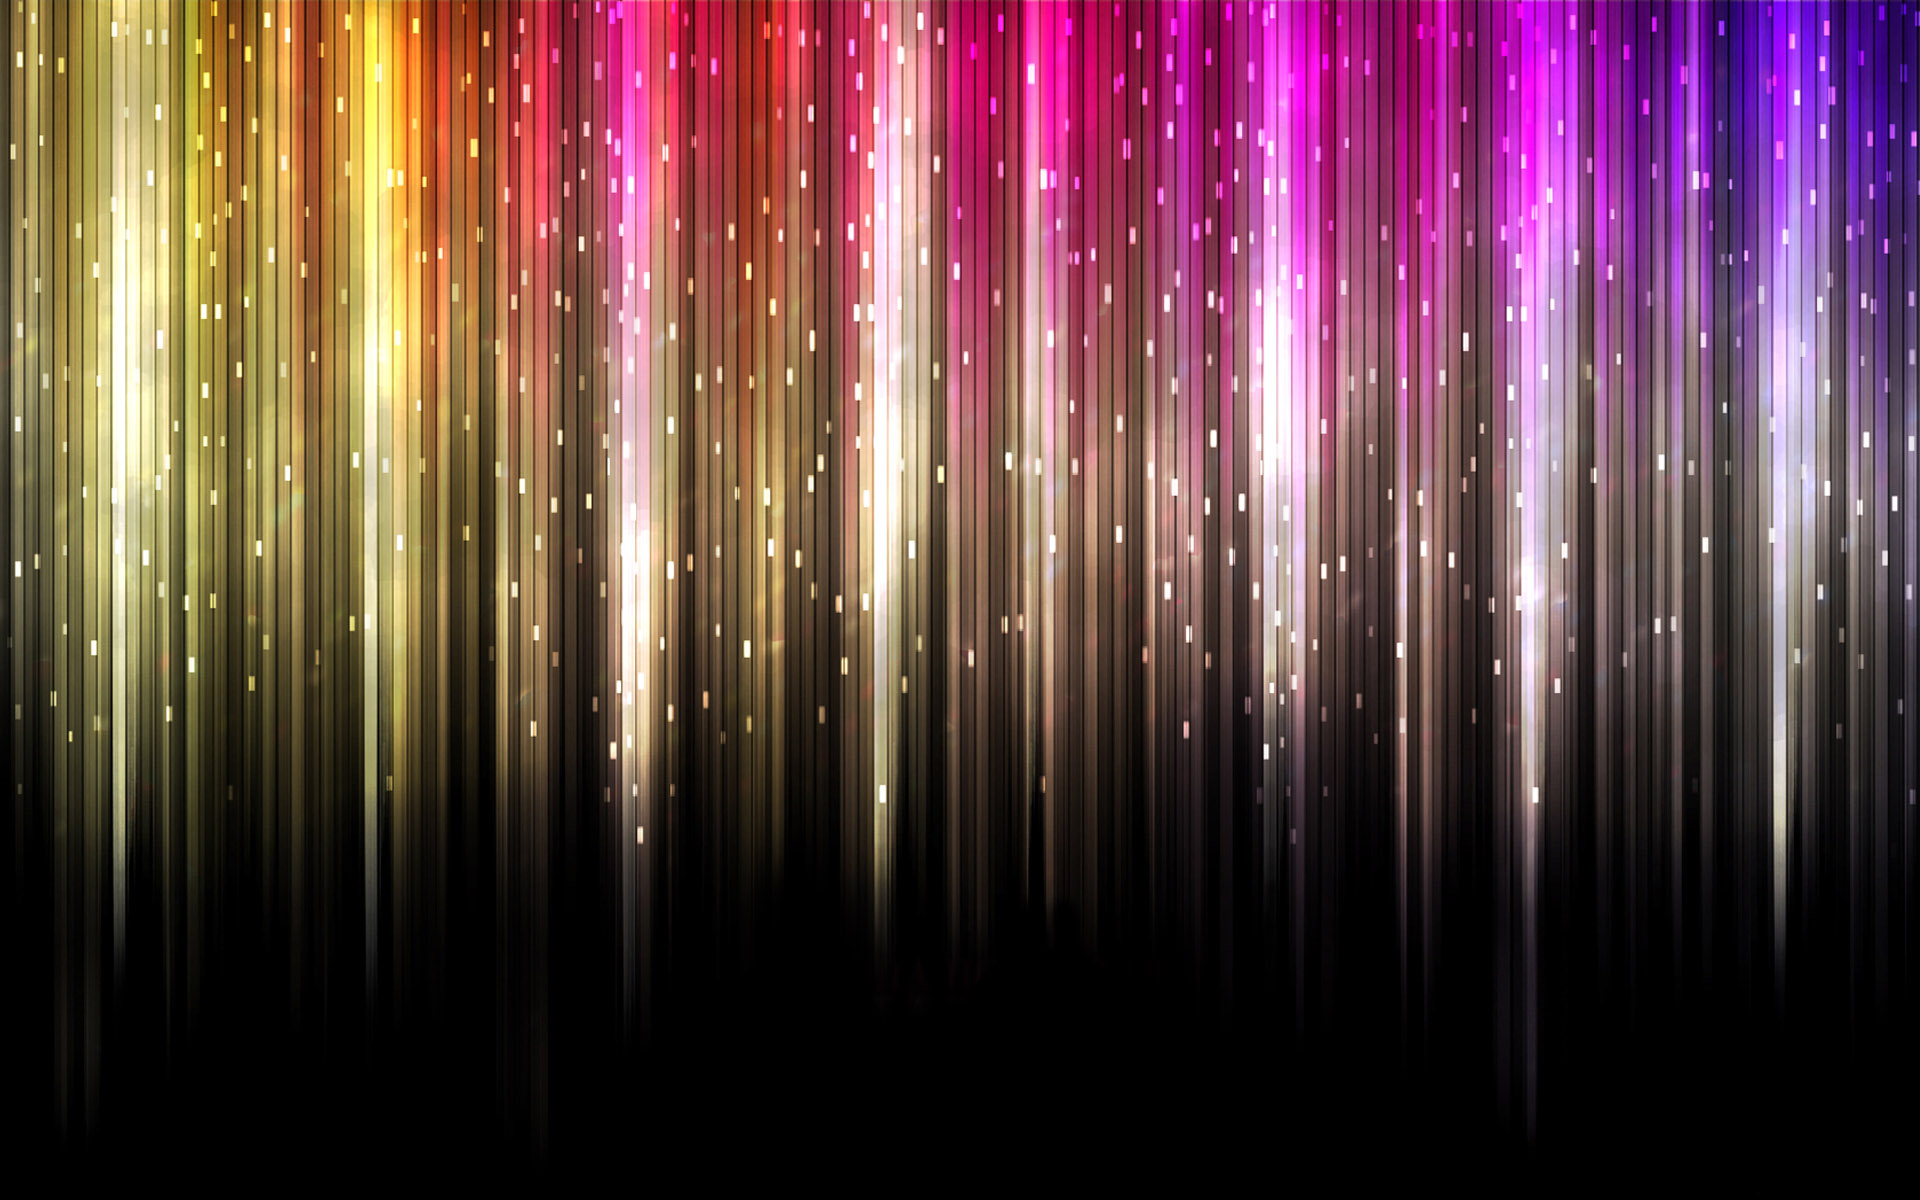 壁纸1920x1200抽象背景 彩虹之色 彩虹之色 抽象背景壁纸 抽象背景 彩虹之色壁纸 抽象背景 彩虹之色图片 抽象背景 彩虹之色素材 插画壁纸 插画图库 插画图片素材桌面壁纸